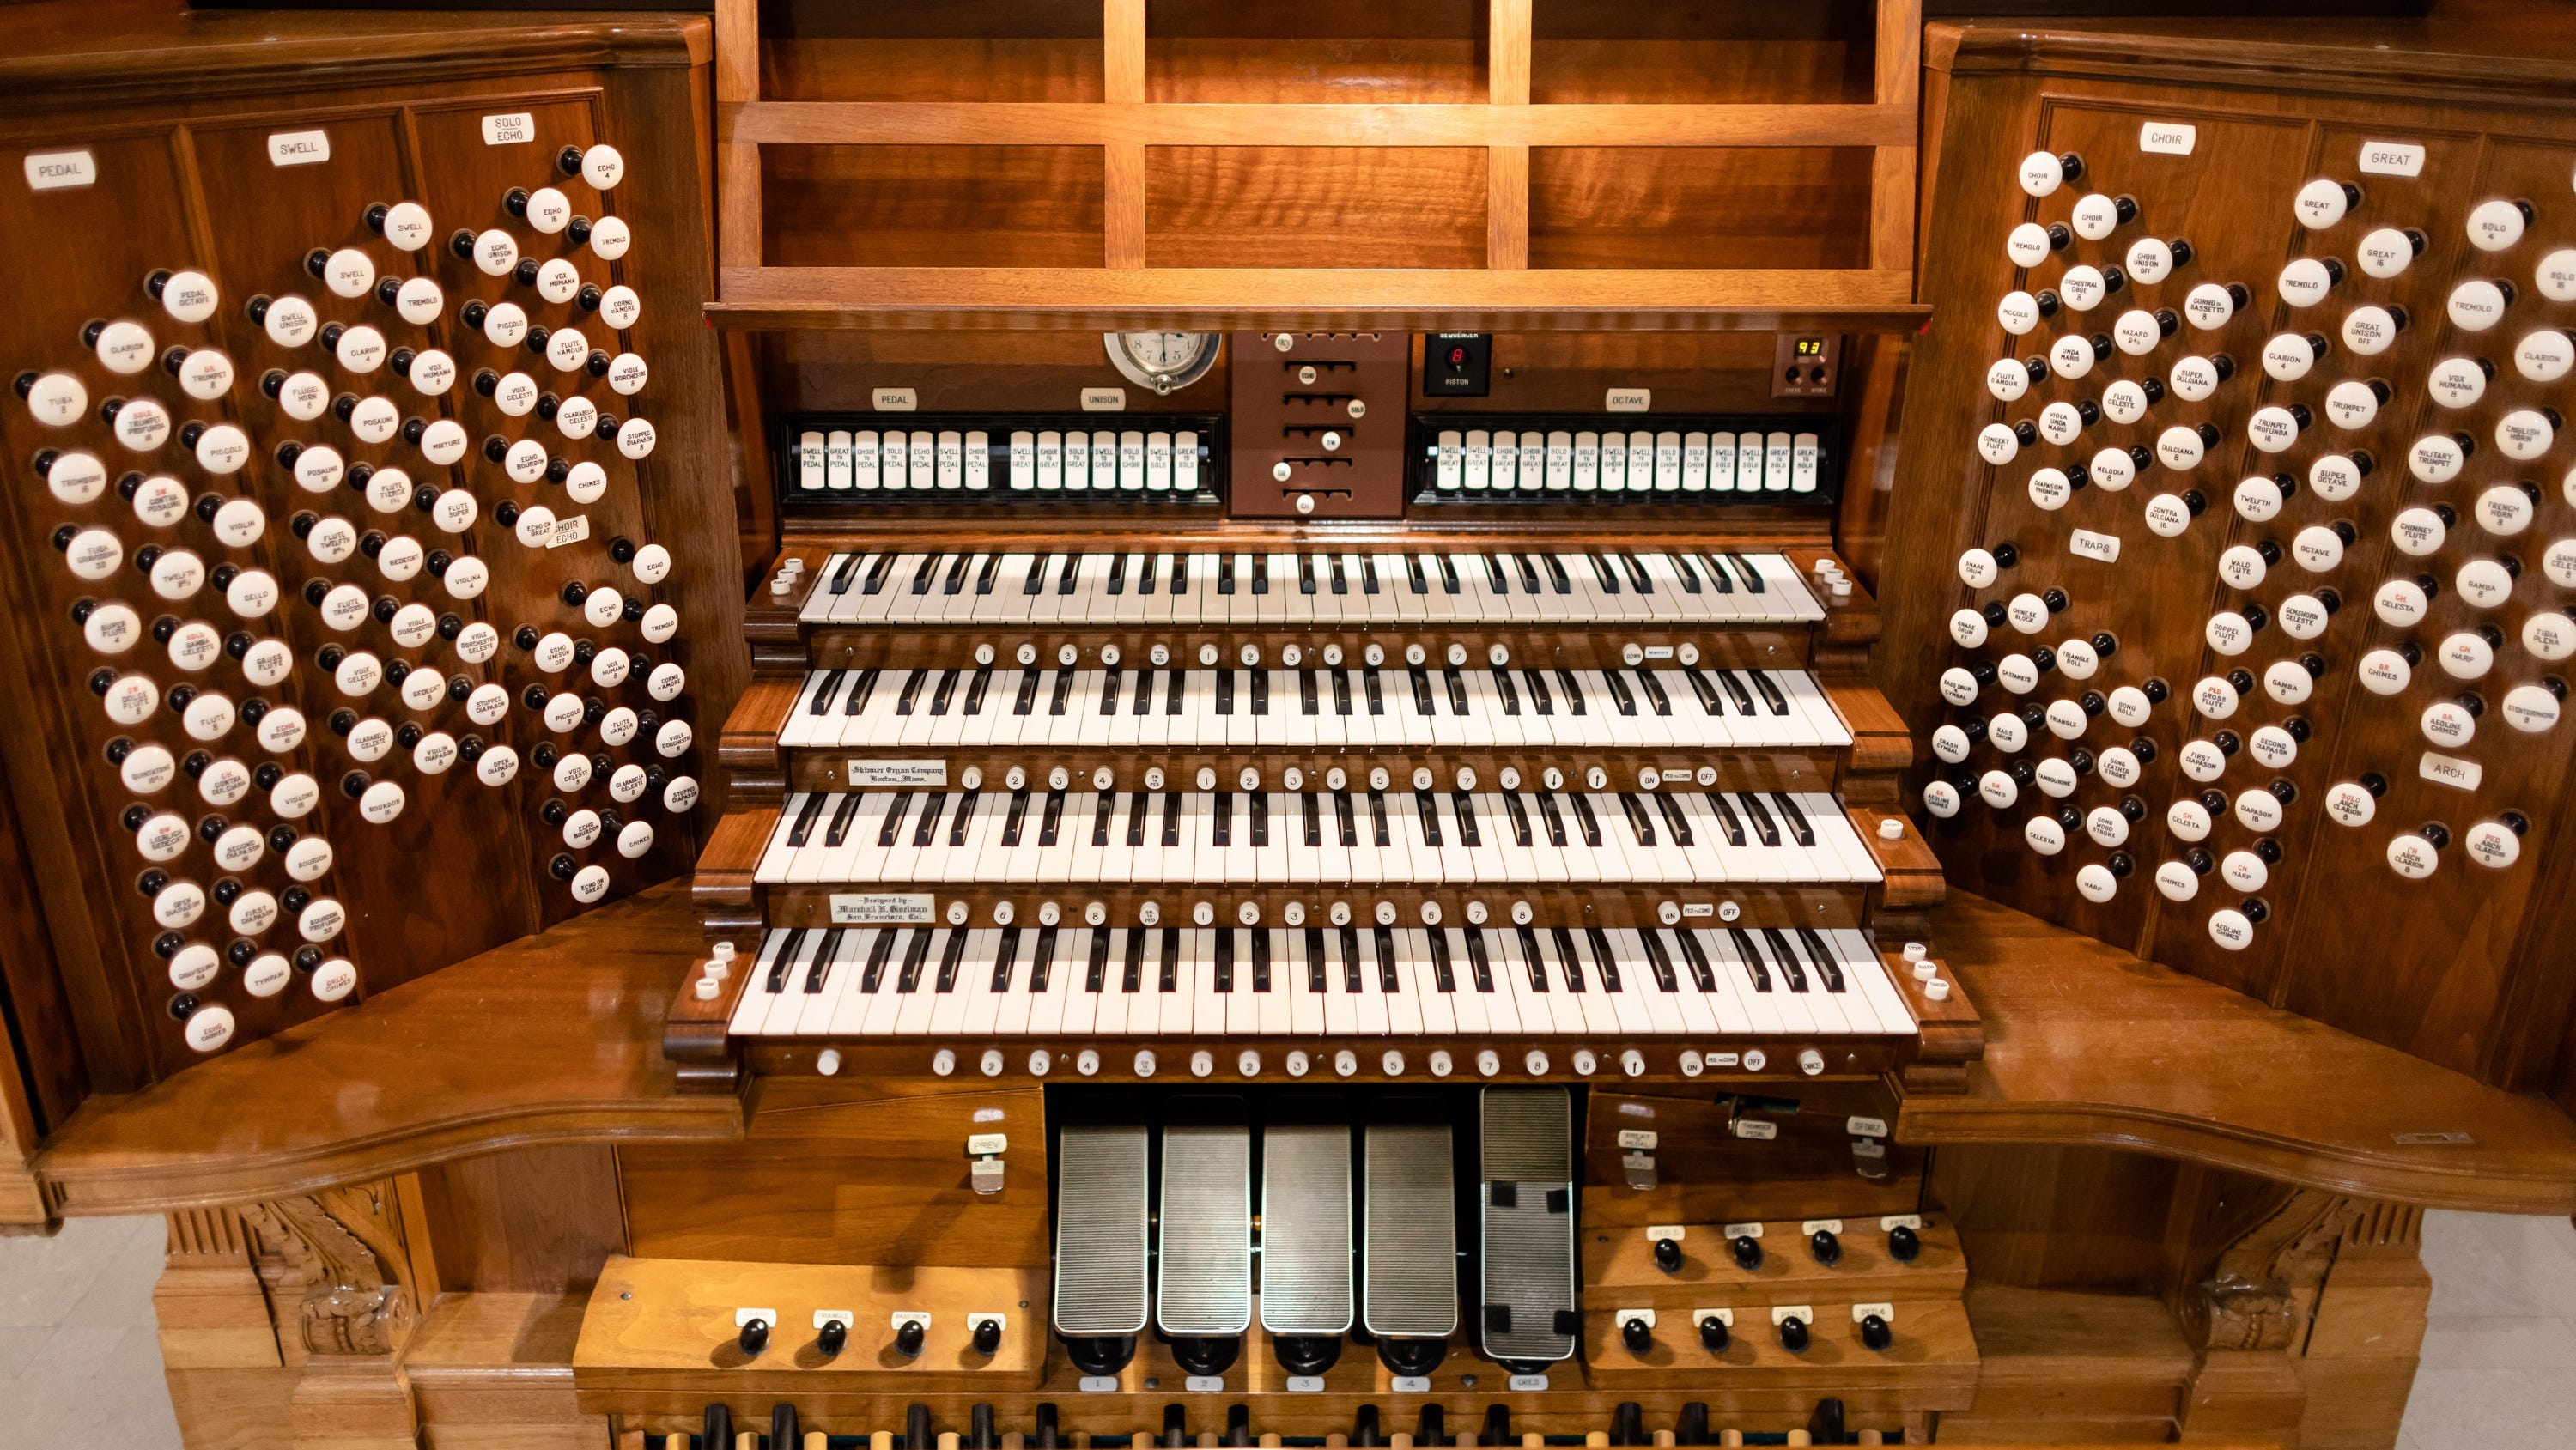 The Spreckels Organ